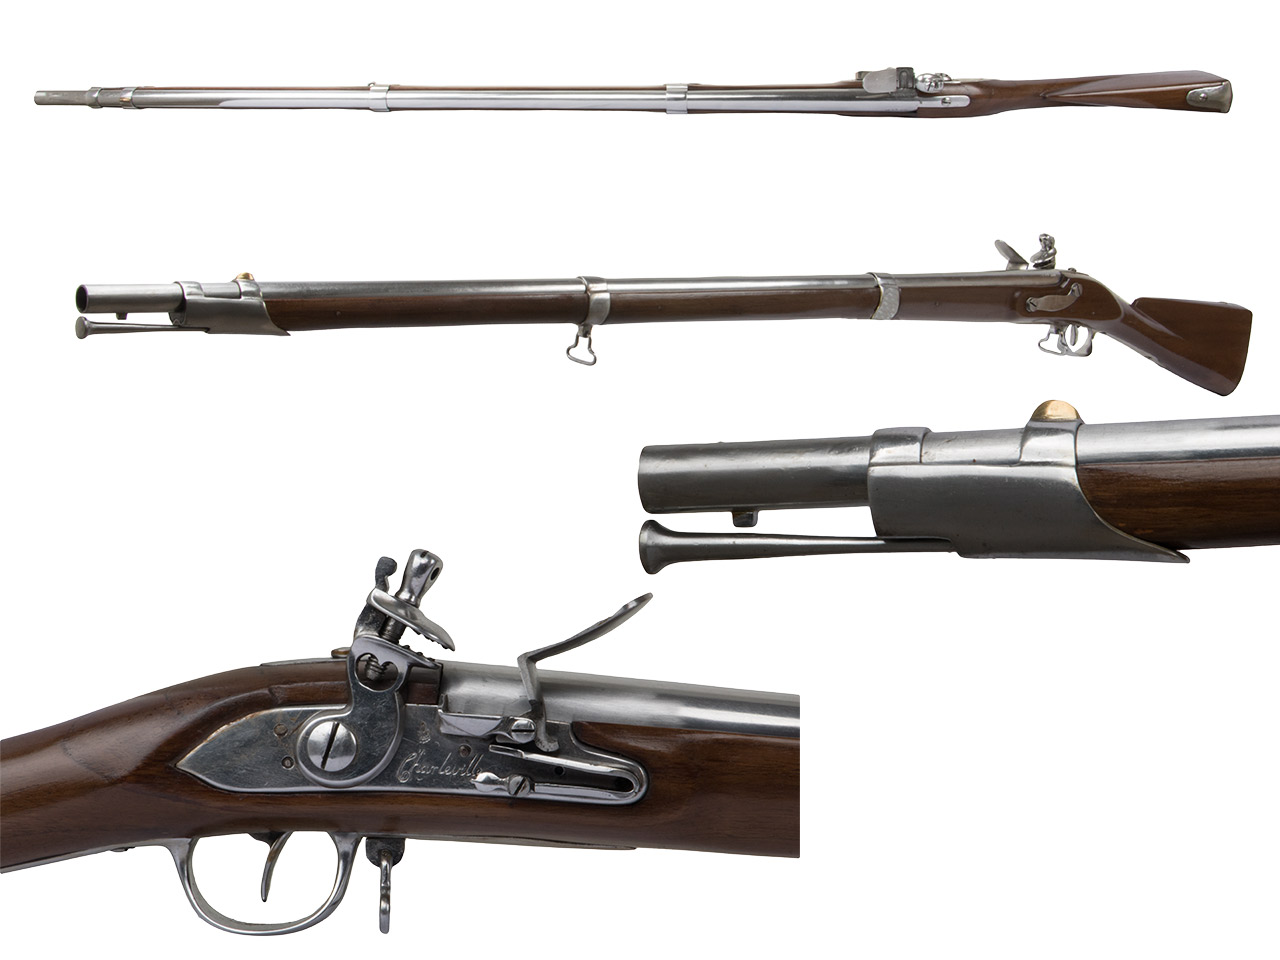 Steinschlossmuskete Charleville 1766 French Marine oder Naval Musket Kaliber .69 bzw. 17,5 mm (P18)